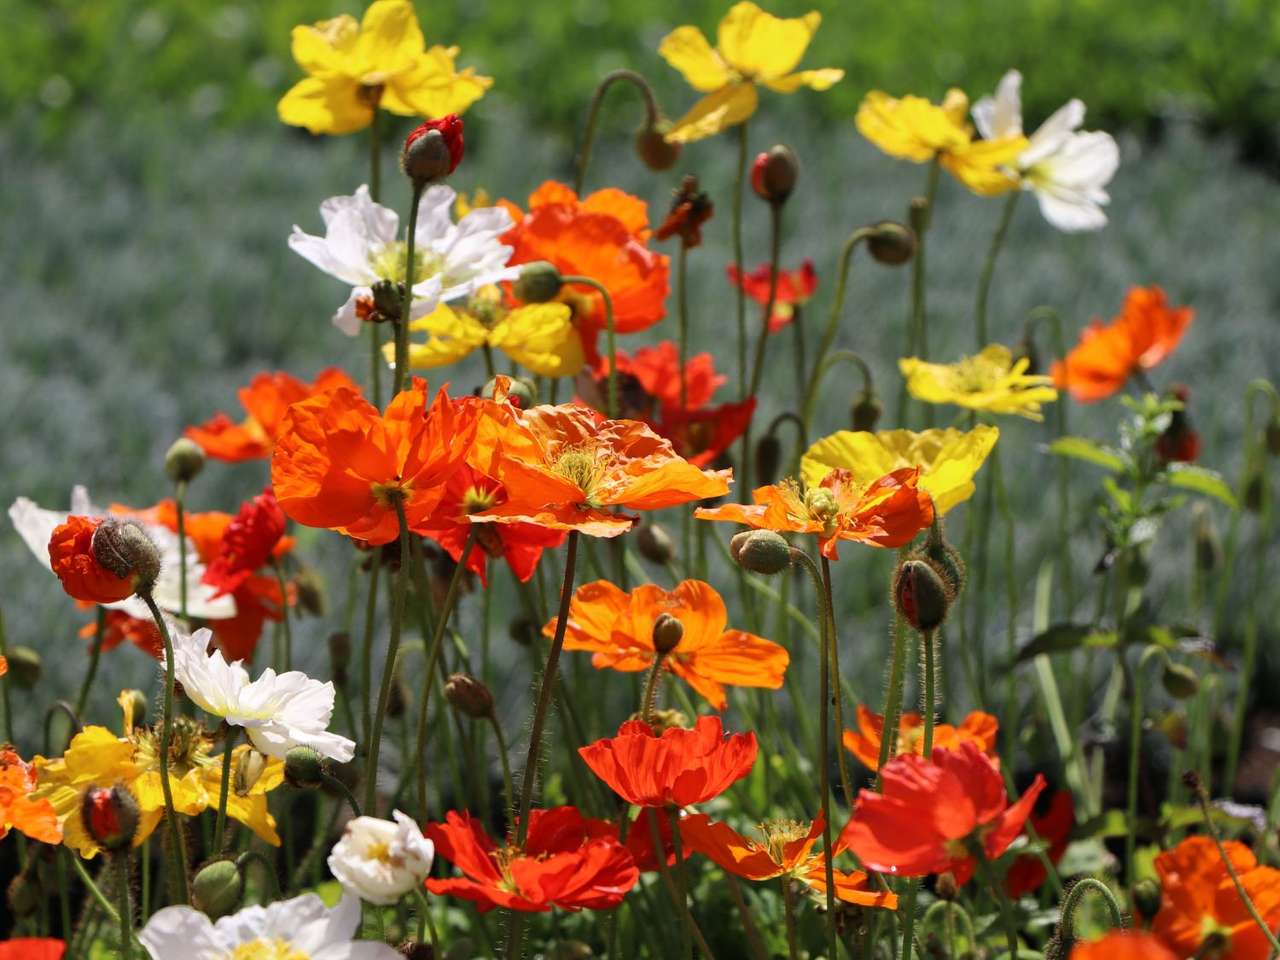 Izlandi mákvirágok fehér - sárga - narancssárga - piros kirakós online